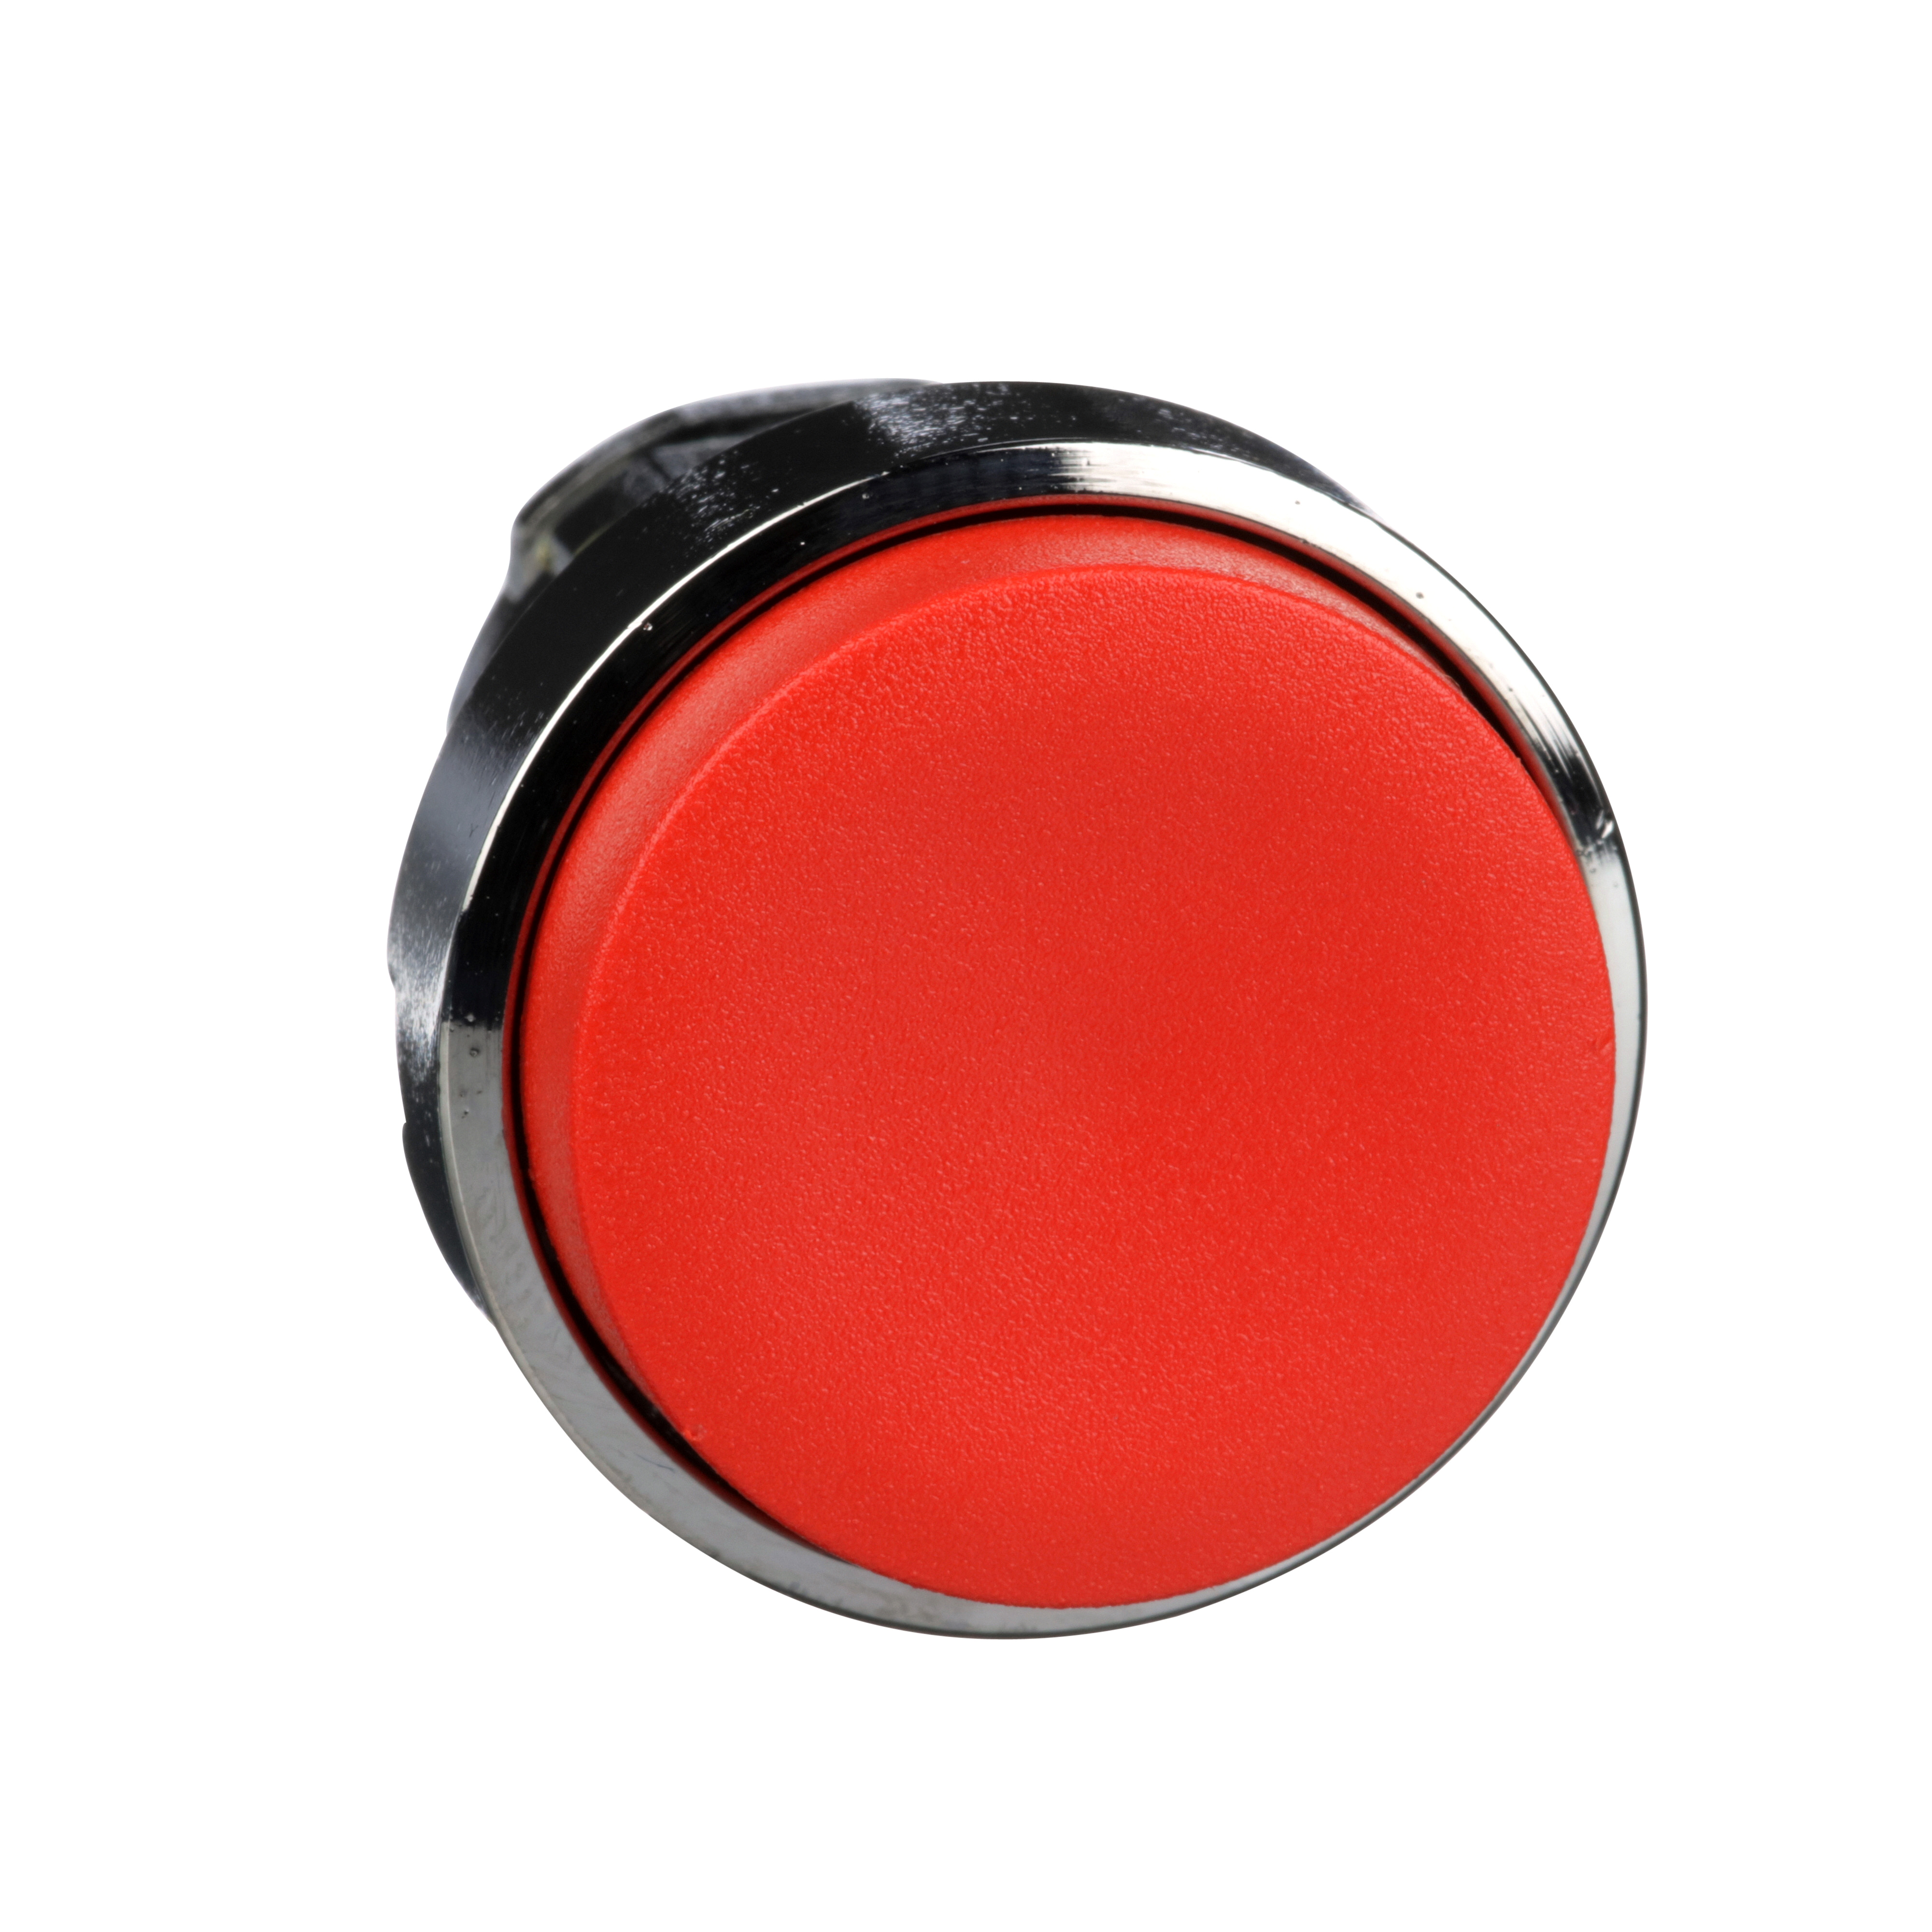 XB4 - Cabezal pulsador saliente, metálico, rojo